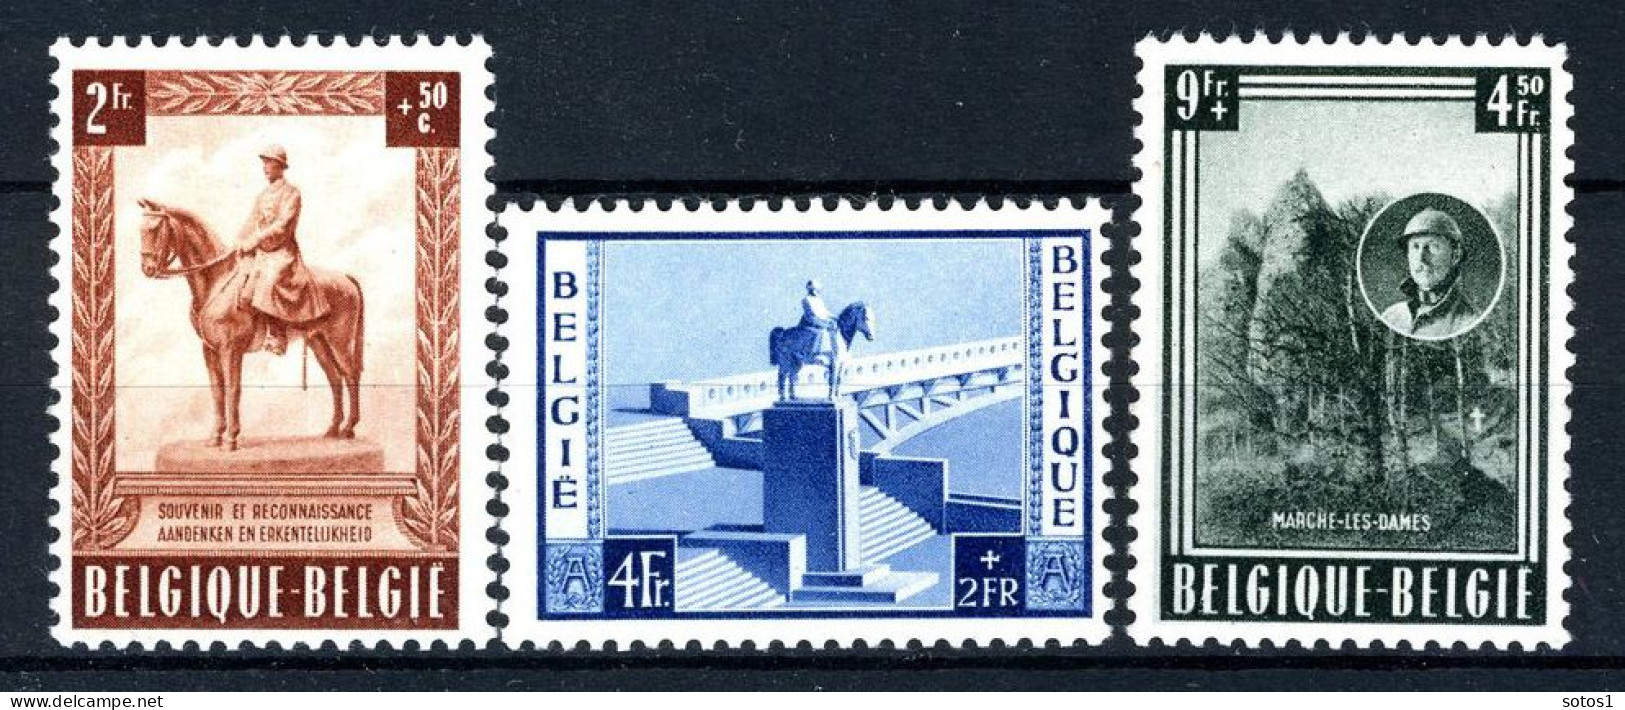 938/940 MNH 1954 - Monument Van Z.M. Koning Albert 1 Te Namen. - Unused Stamps